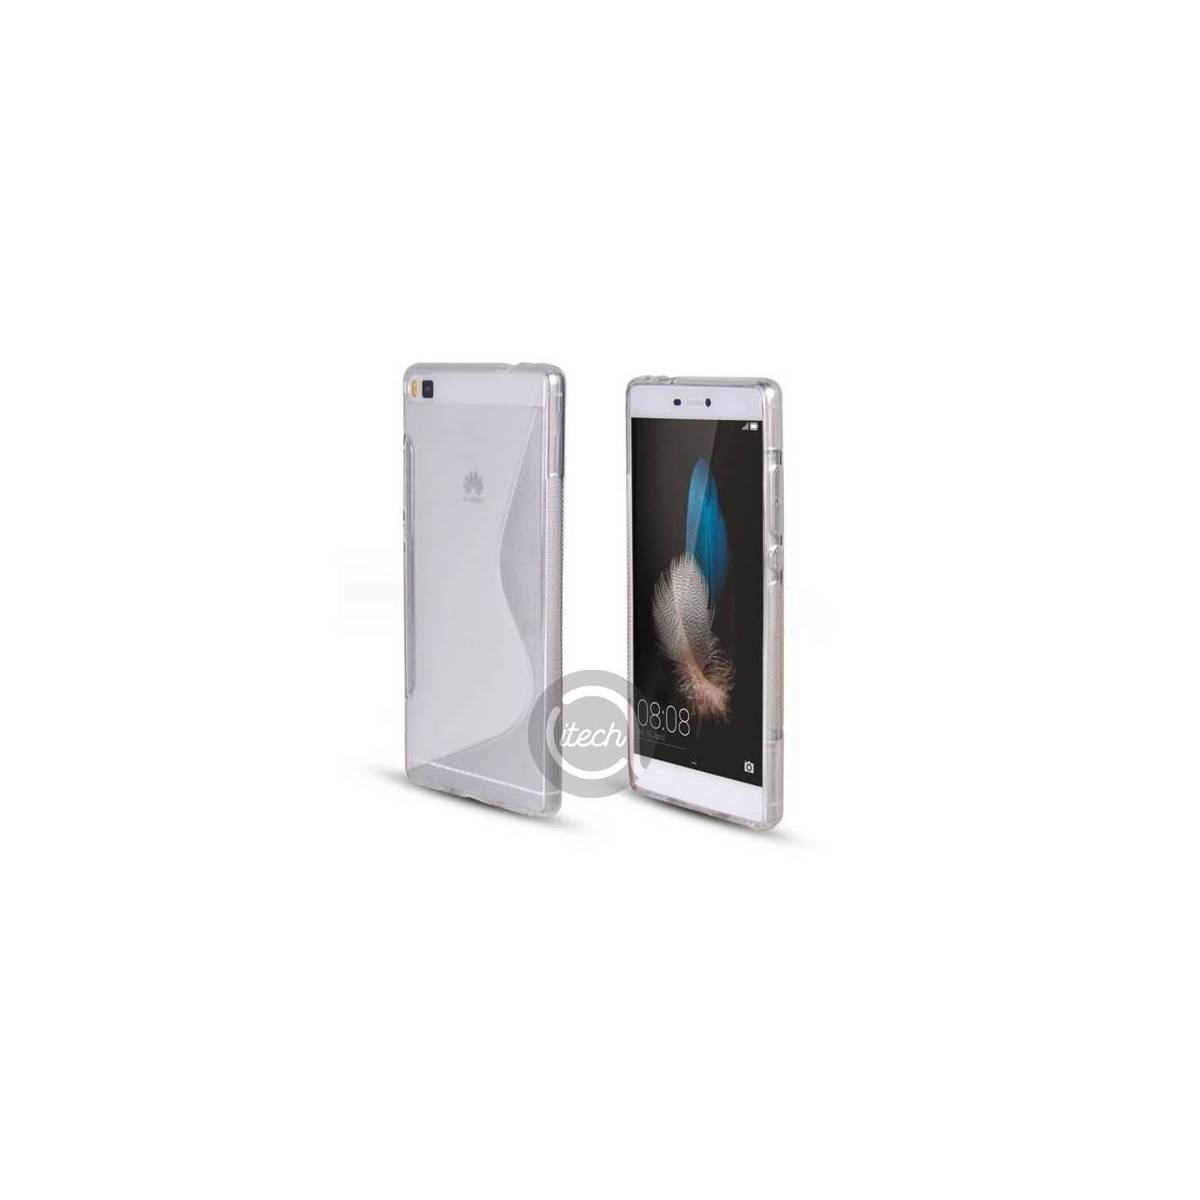 Coque Silicone S Transparente iPhone 5/5S/SE